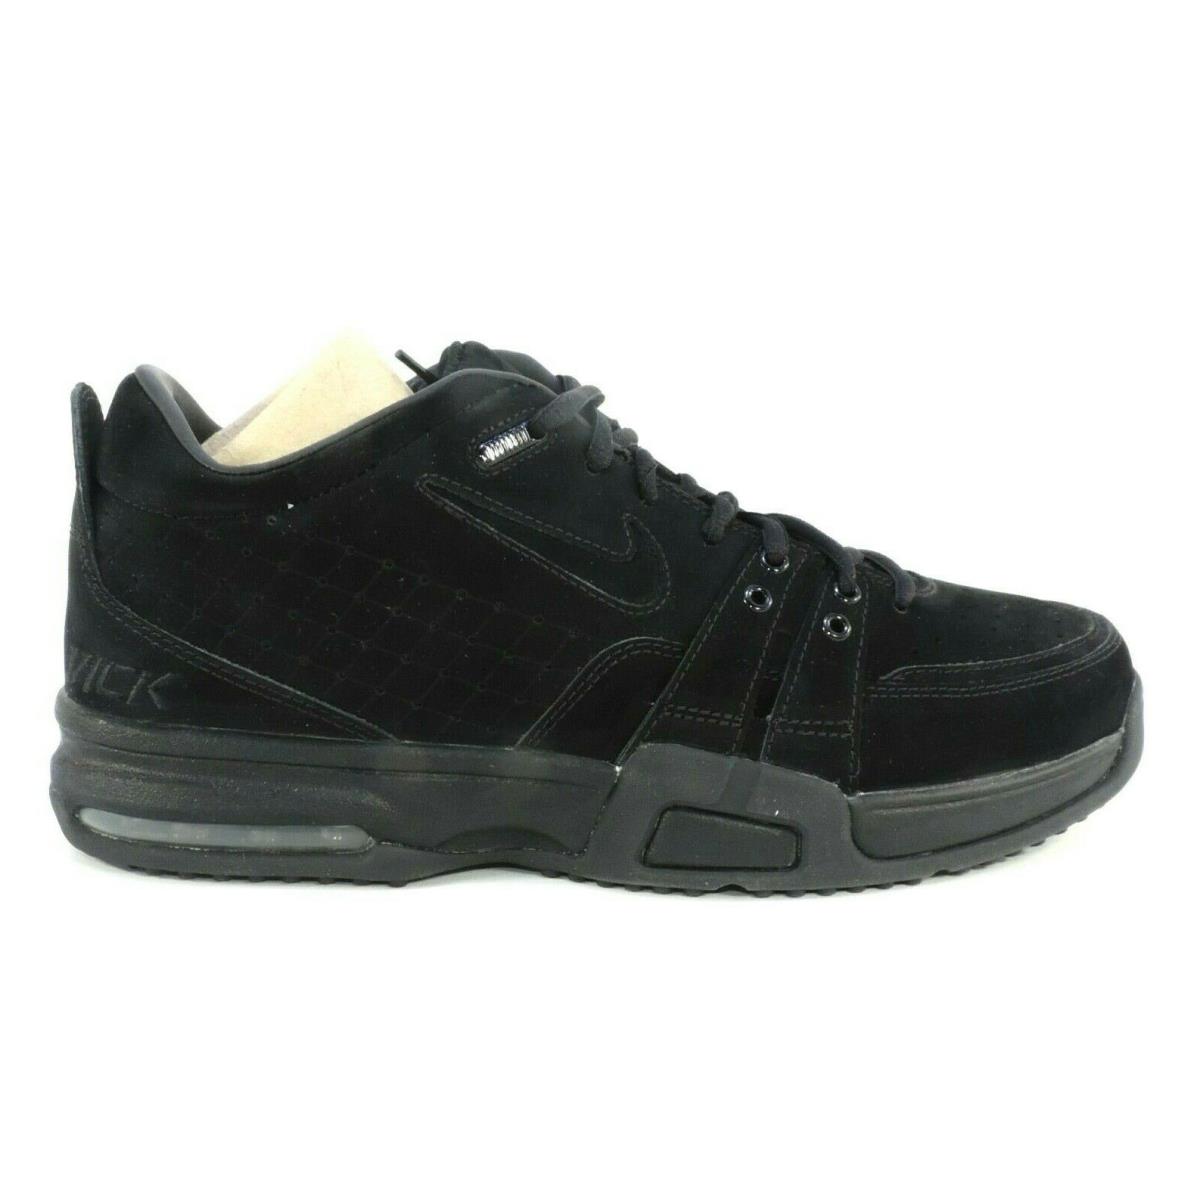 Nike Air Blacksburg Michael Vick 7 Mens Shoes Black Vintage Exclusive DS SZ 9